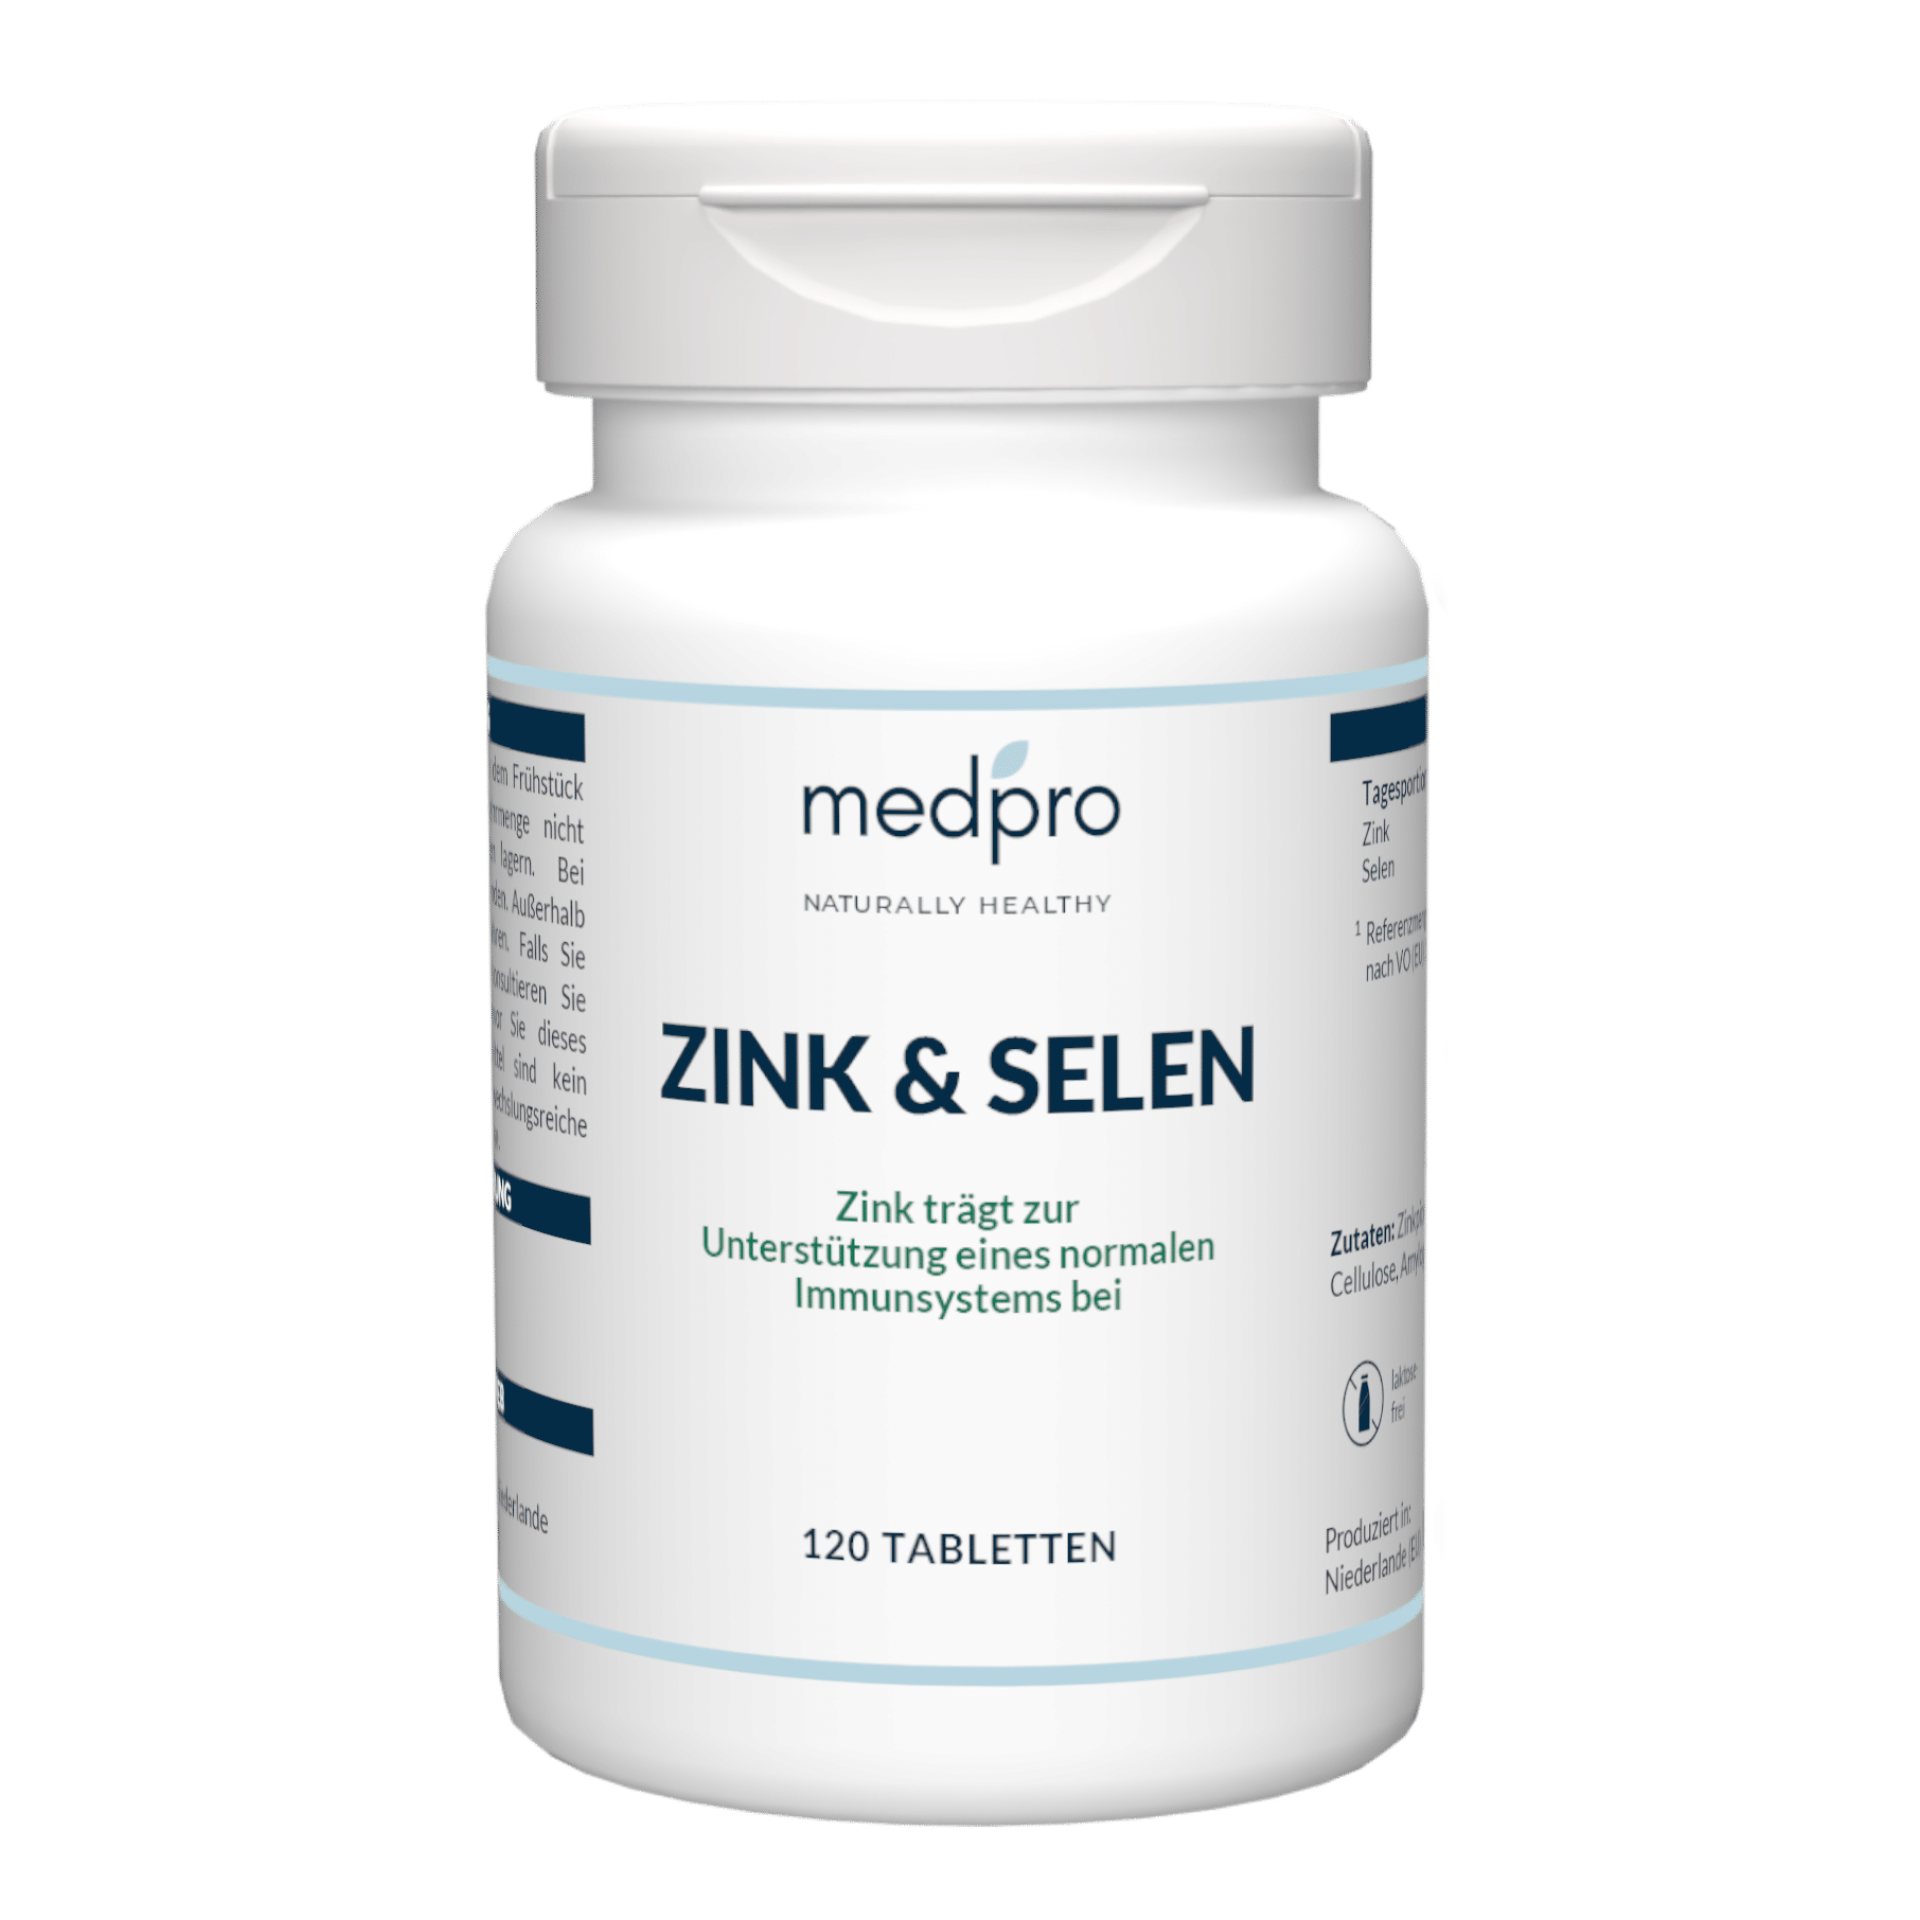 Zinc and selenium tablet bottle